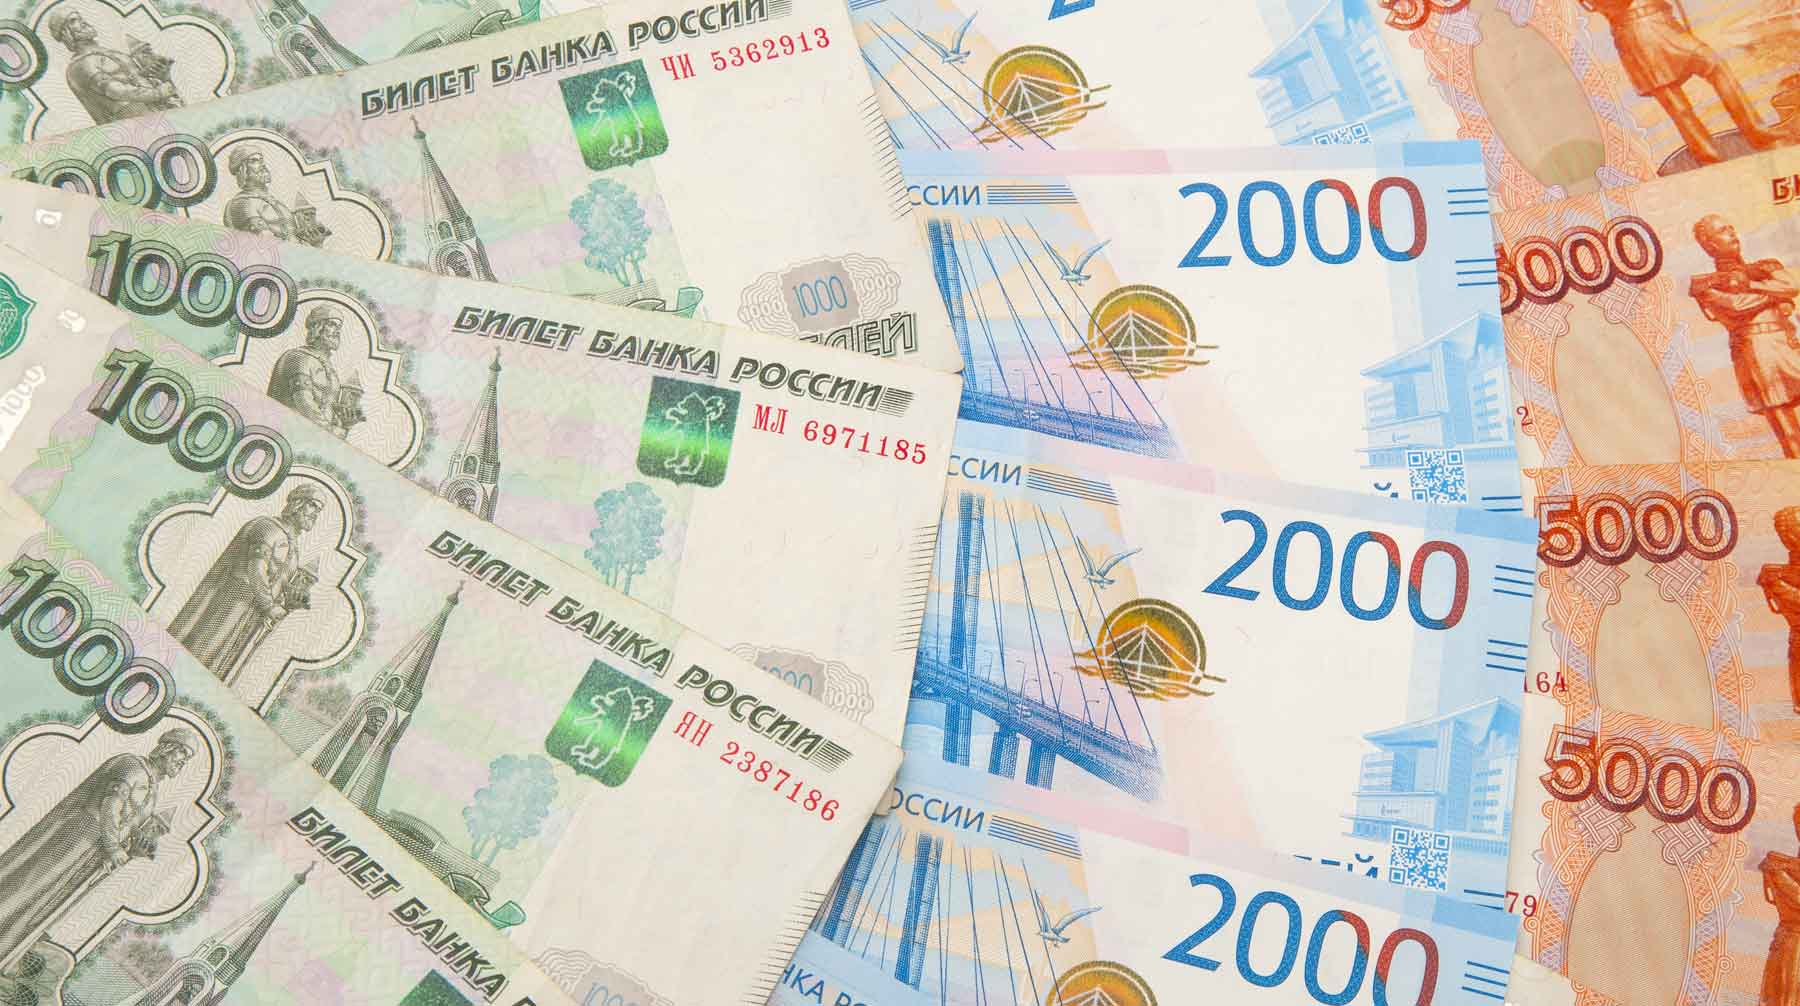 Судя по видеозаписи деньги хранились в сумках, пакетах и коробках в различных валютах Фото: © GLOBAL LOOK press / Sergey Kovalev